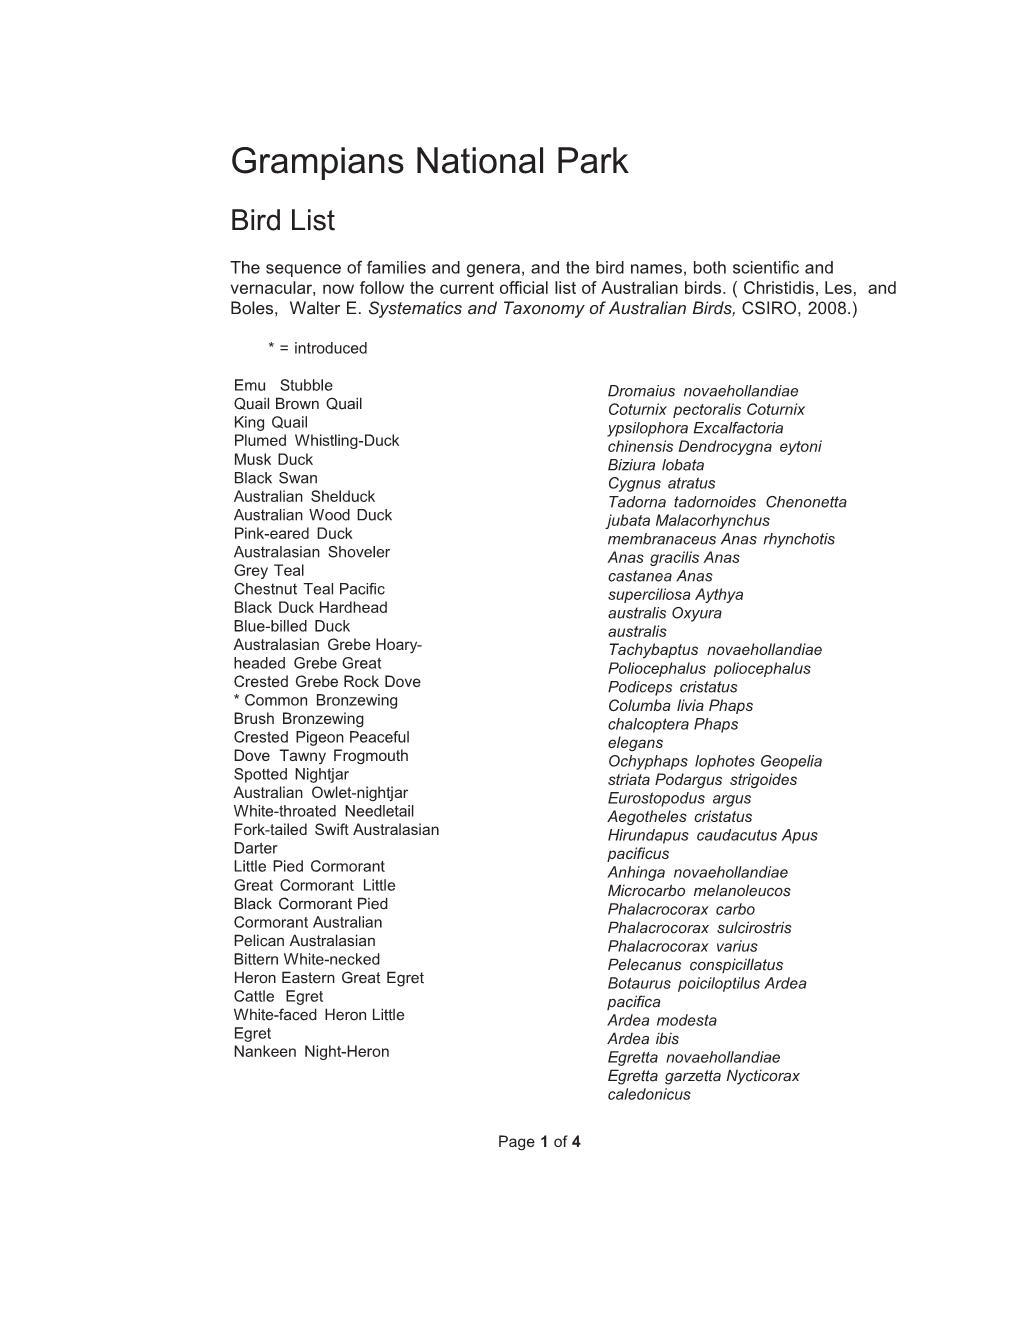 Gramps Bird List